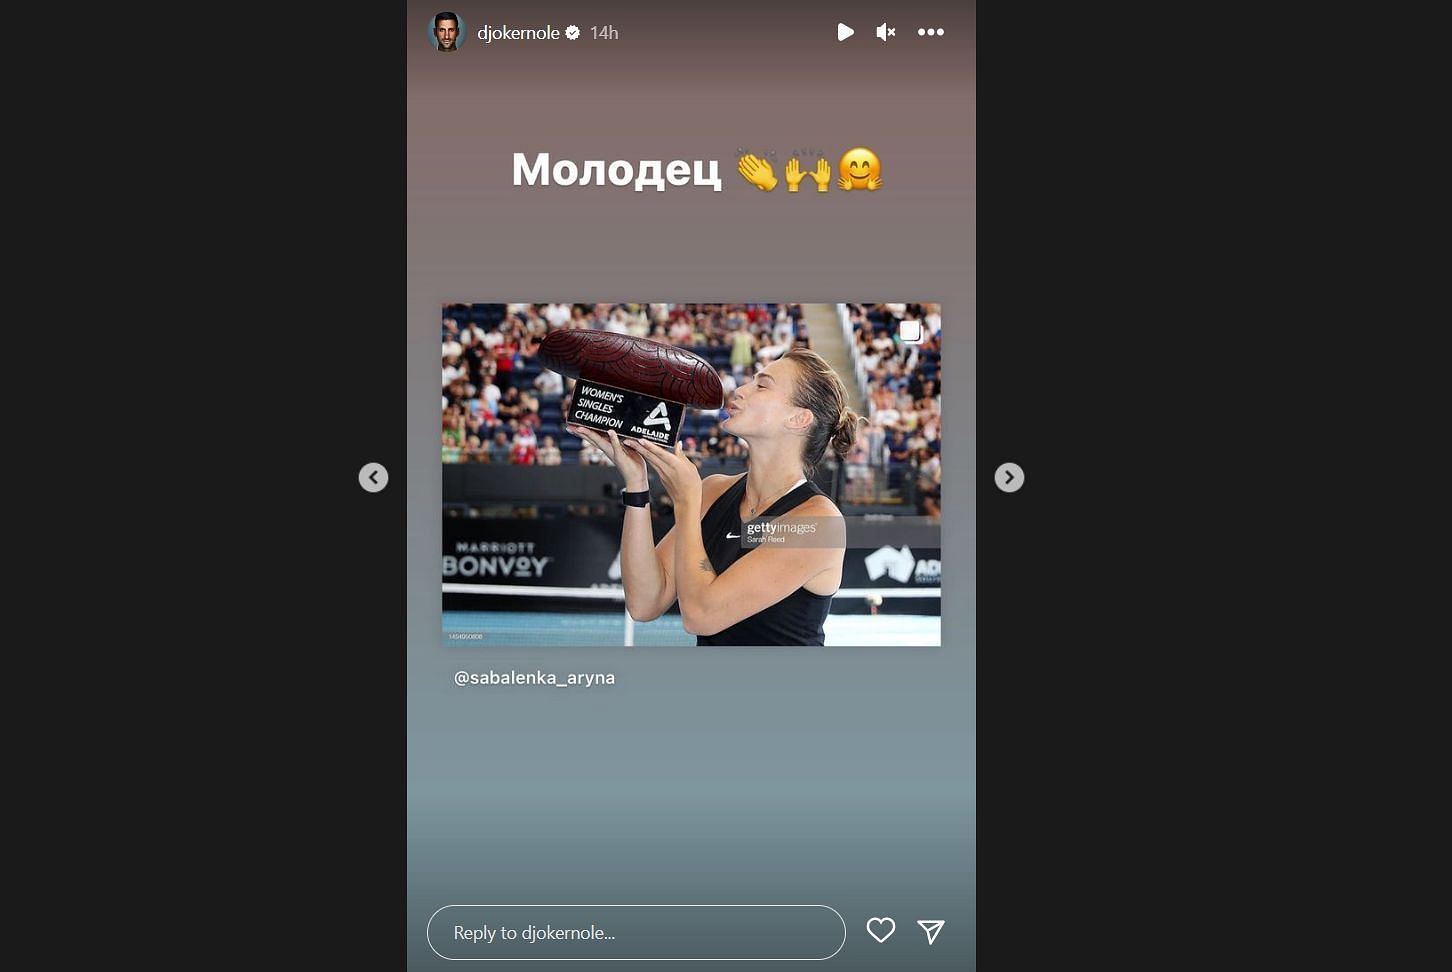 Via Instagram - The Serb congratulates Sabalenka for her victory.